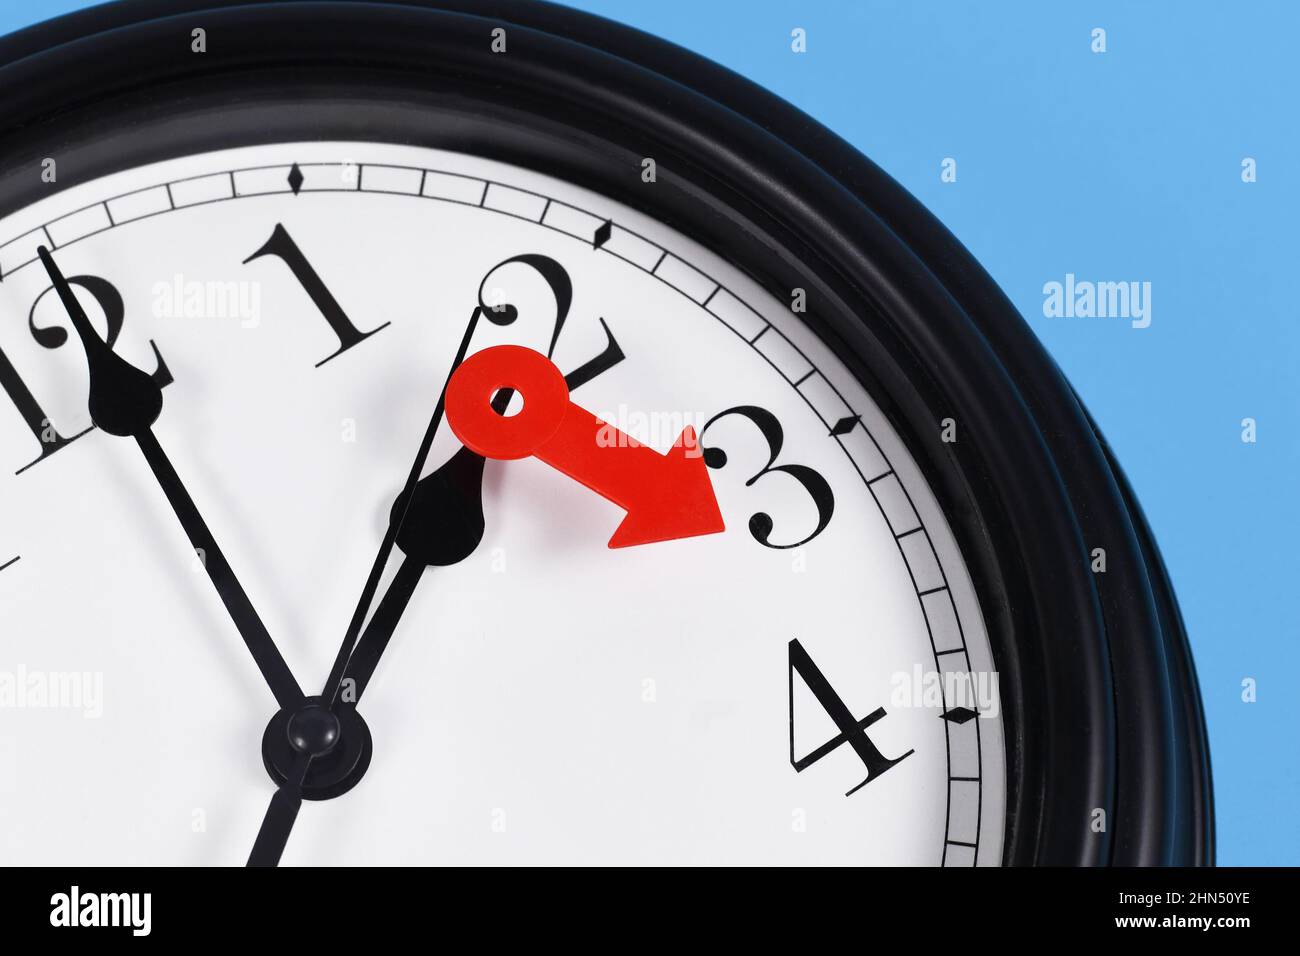 Cambio de horario de verano para el concepto de horario de verano en Europa. Flecha roja que simboliza el reloj hacia delante una hora Foto de stock